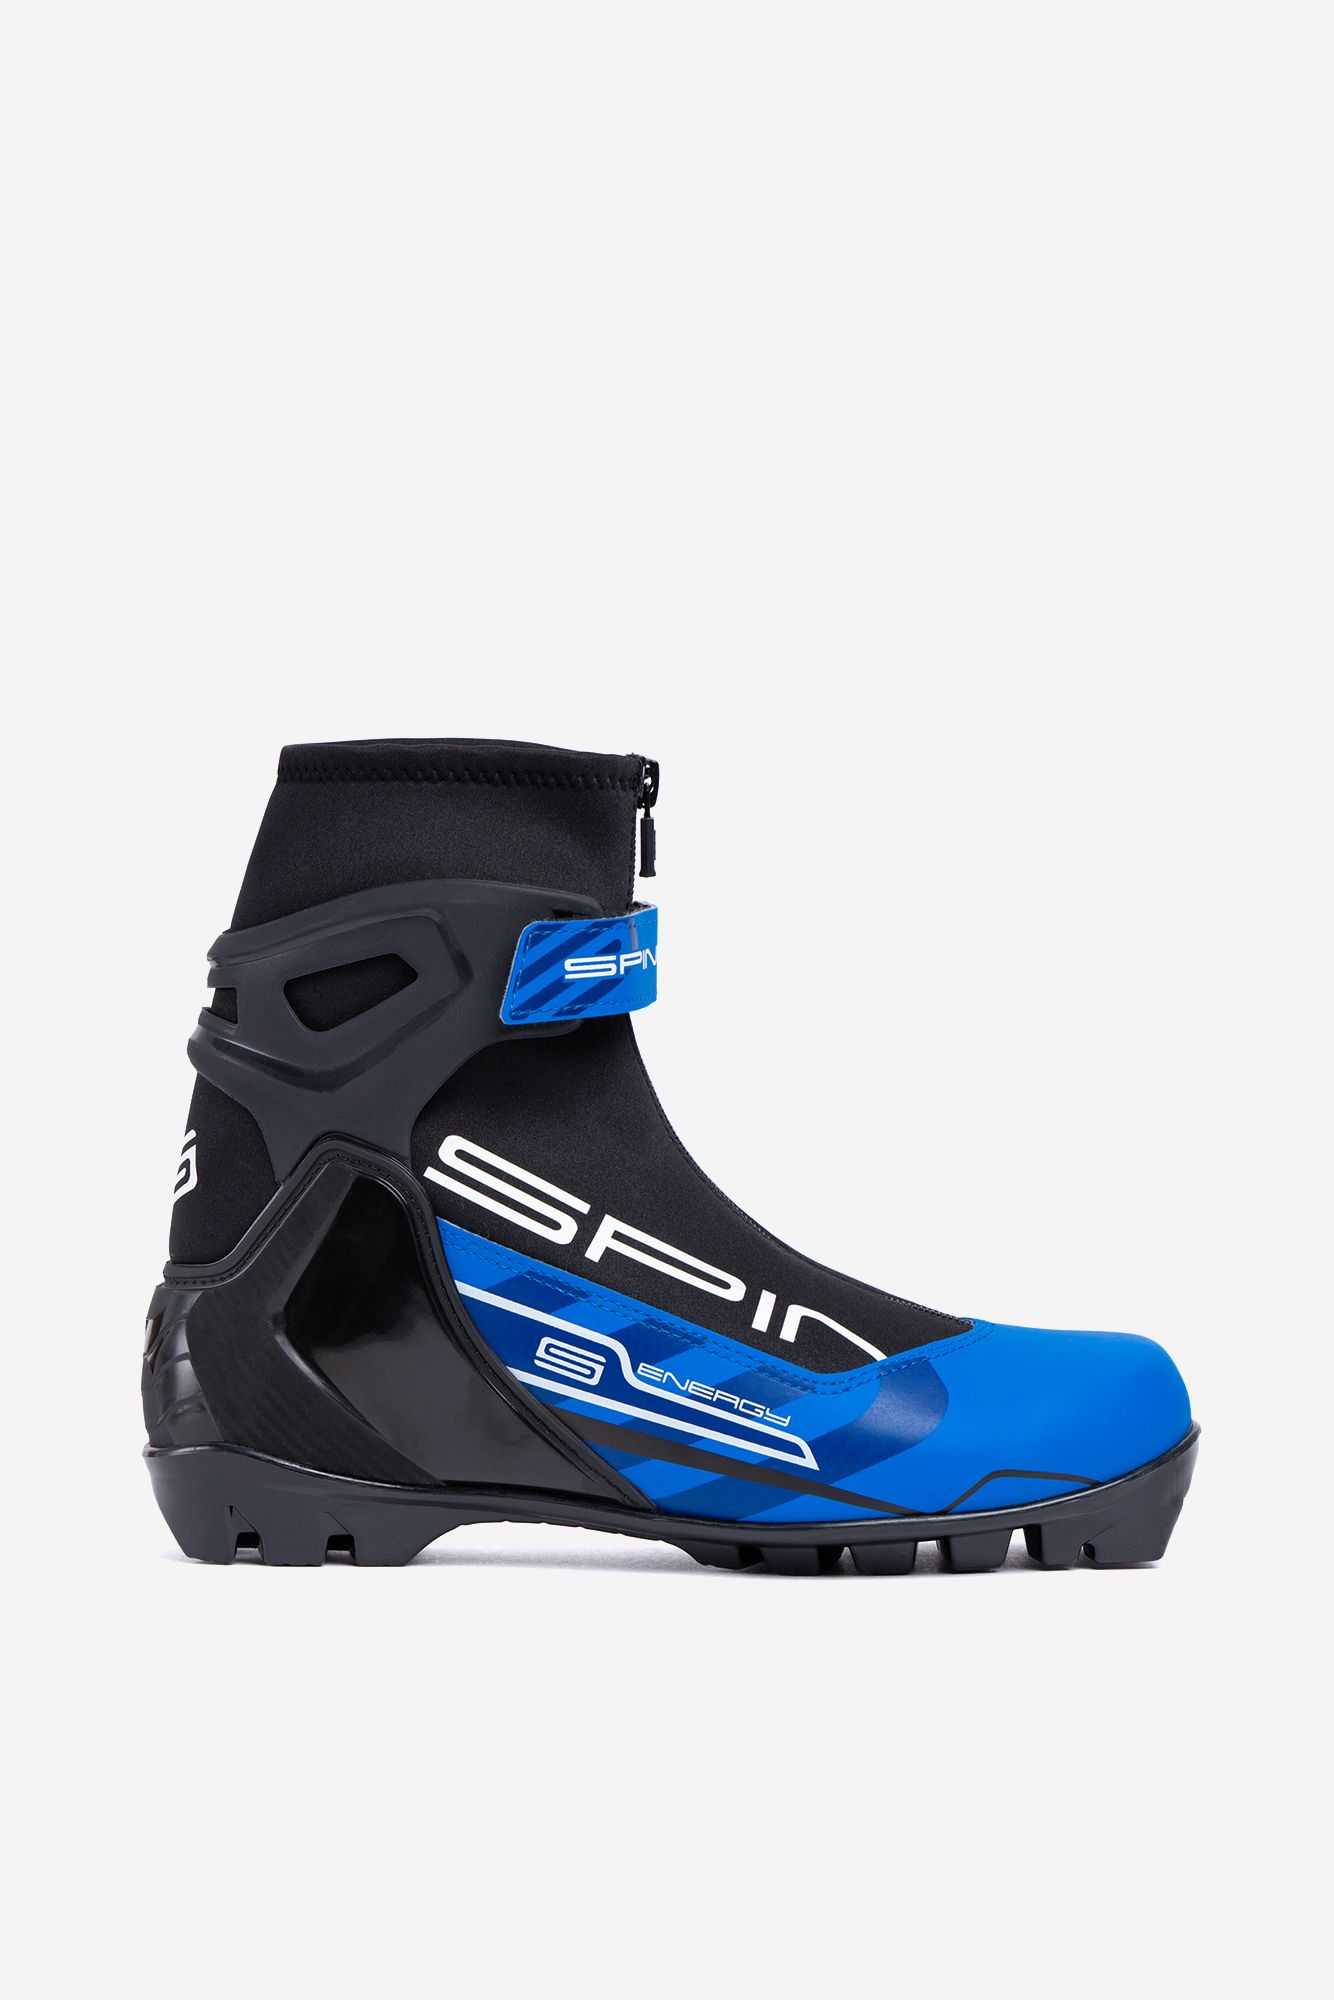 Лыжные ботинки SPINE NNN Energy (258) (черный/синий) (45)